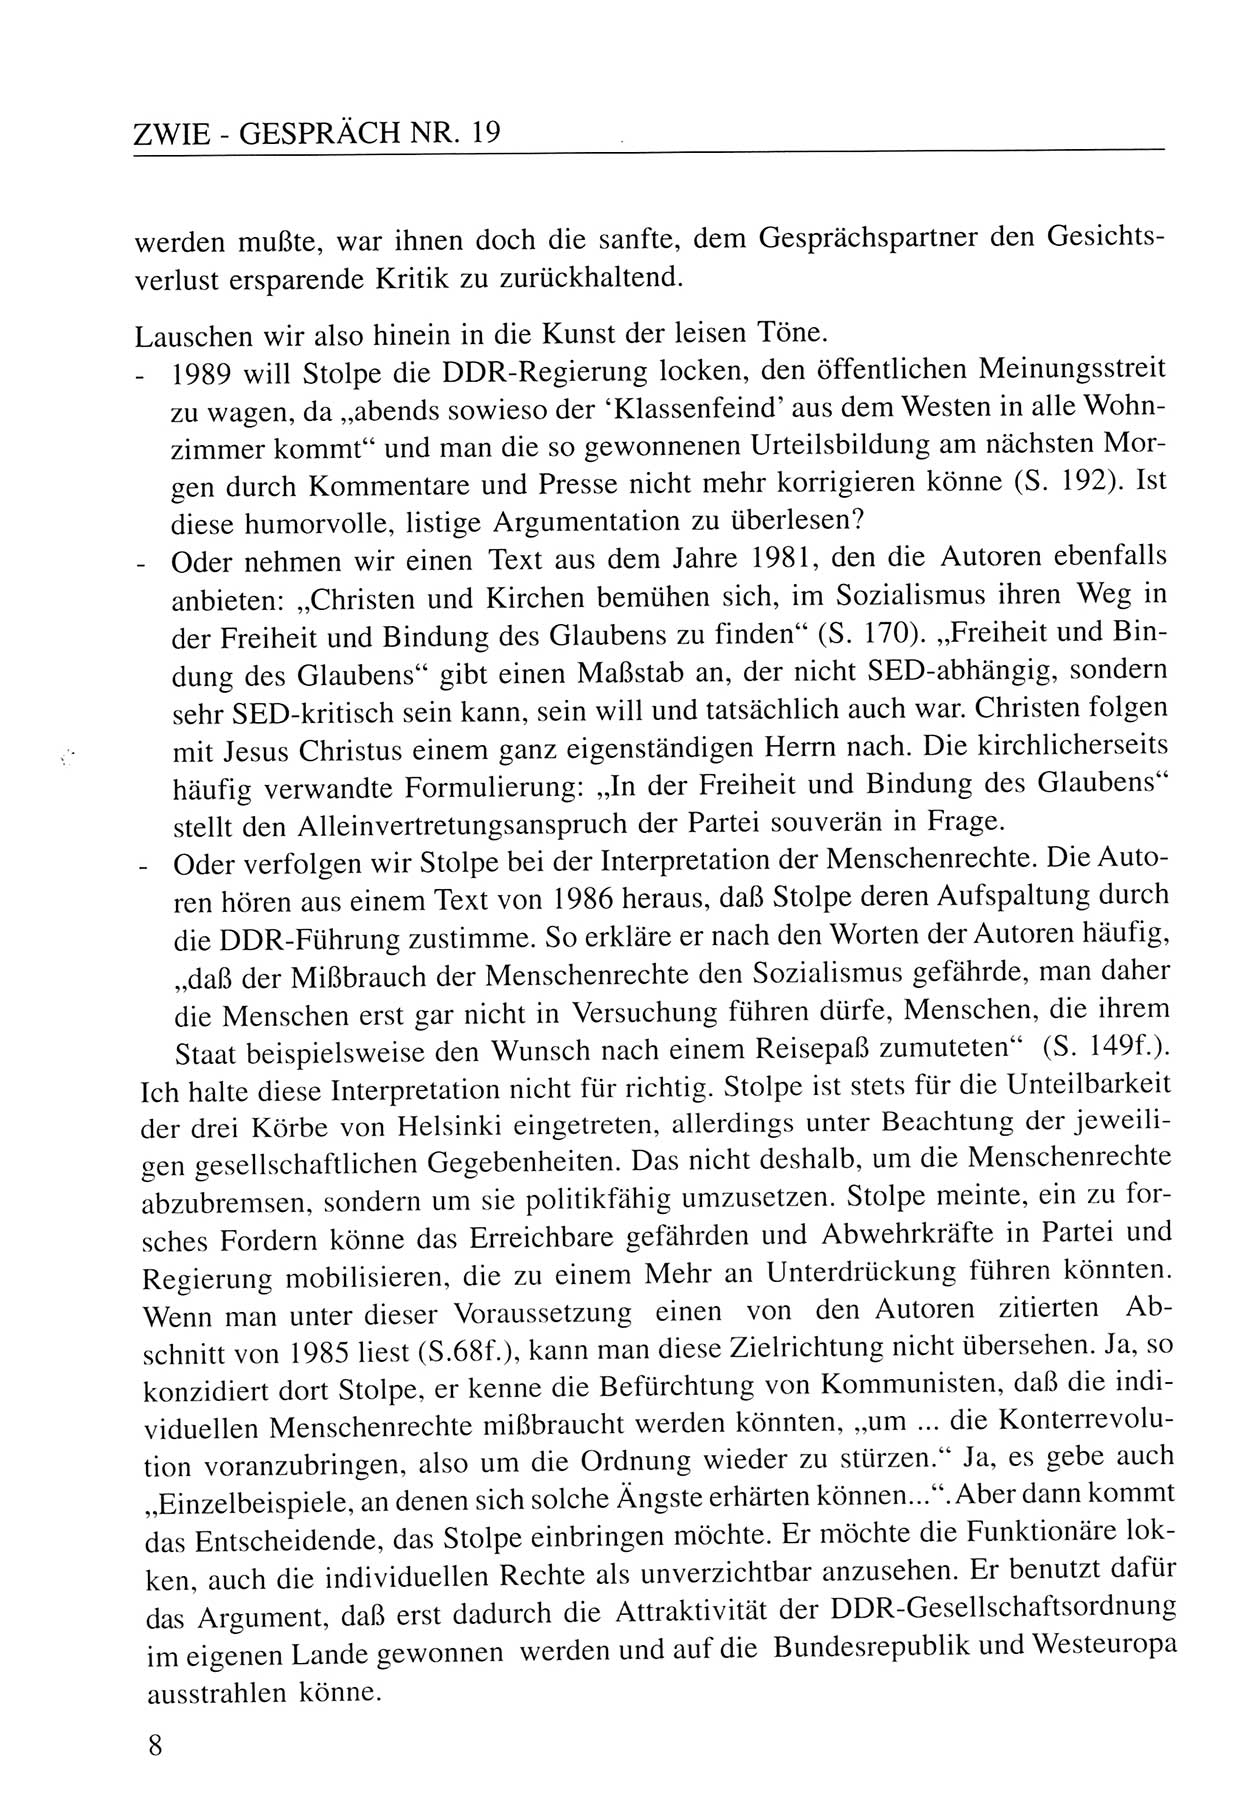 Zwie-Gespräch, Beiträge zum Umgang mit der Staatssicherheits-Vergangenheit [Deutsche Demokratische Republik (DDR)], Ausgabe Nr. 19, Berlin 1994, Seite 8 (Zwie-Gespr. Ausg. 19 1994, S. 8)